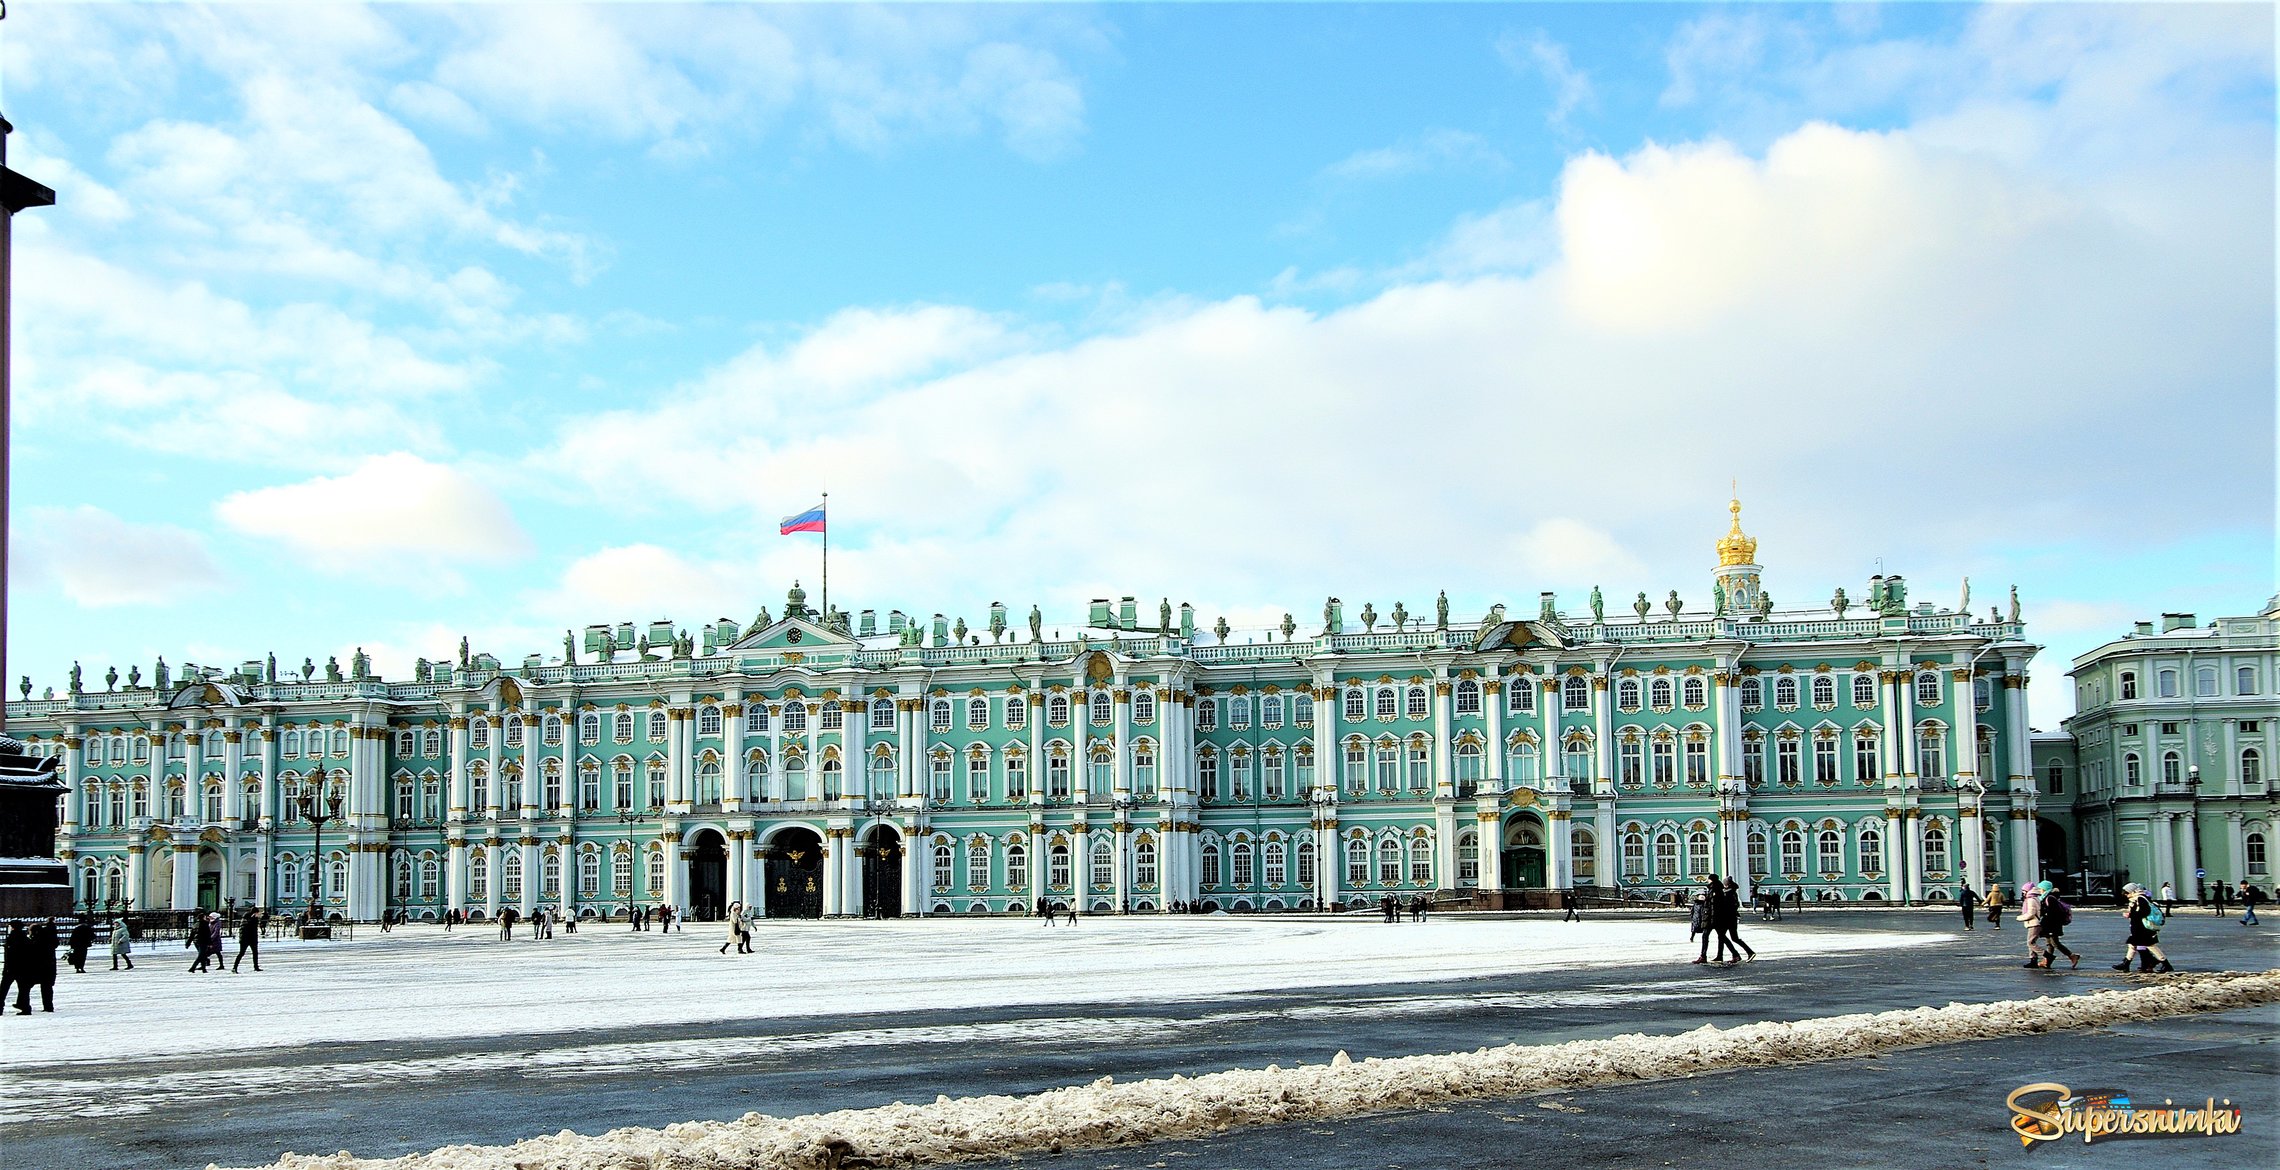 Главный фасад зимнего дворца, обращенный к Дворцовой площади.